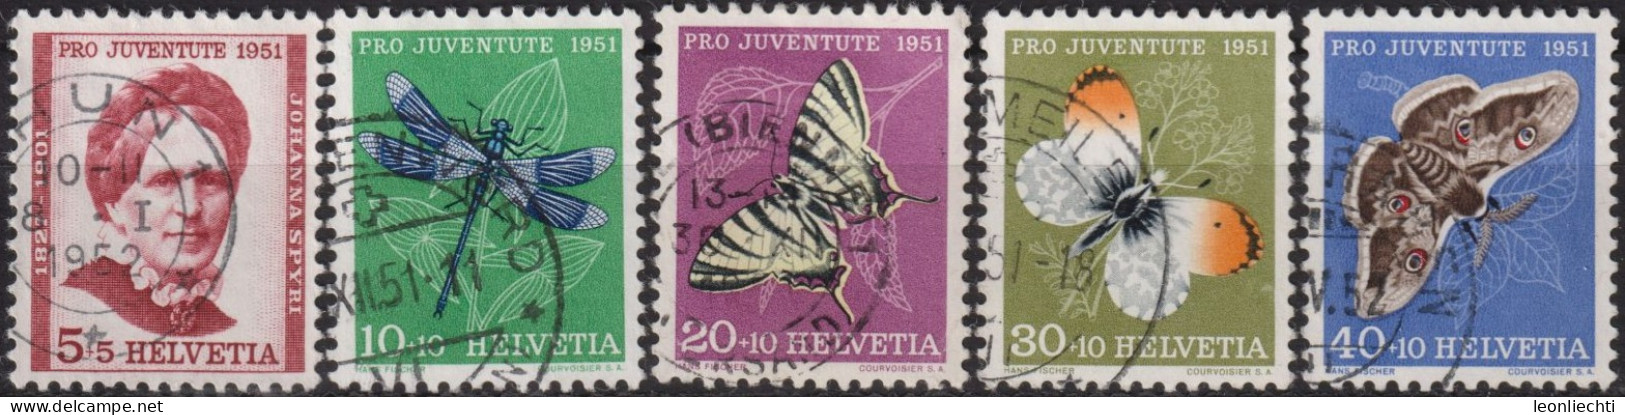 1951 Schweiz Pro Juventute ° Zum:CH J138-J142,Yt:CH 512-516, Mi:CH 561-265, Insekten Und Johanna Spyri - Gebruikt